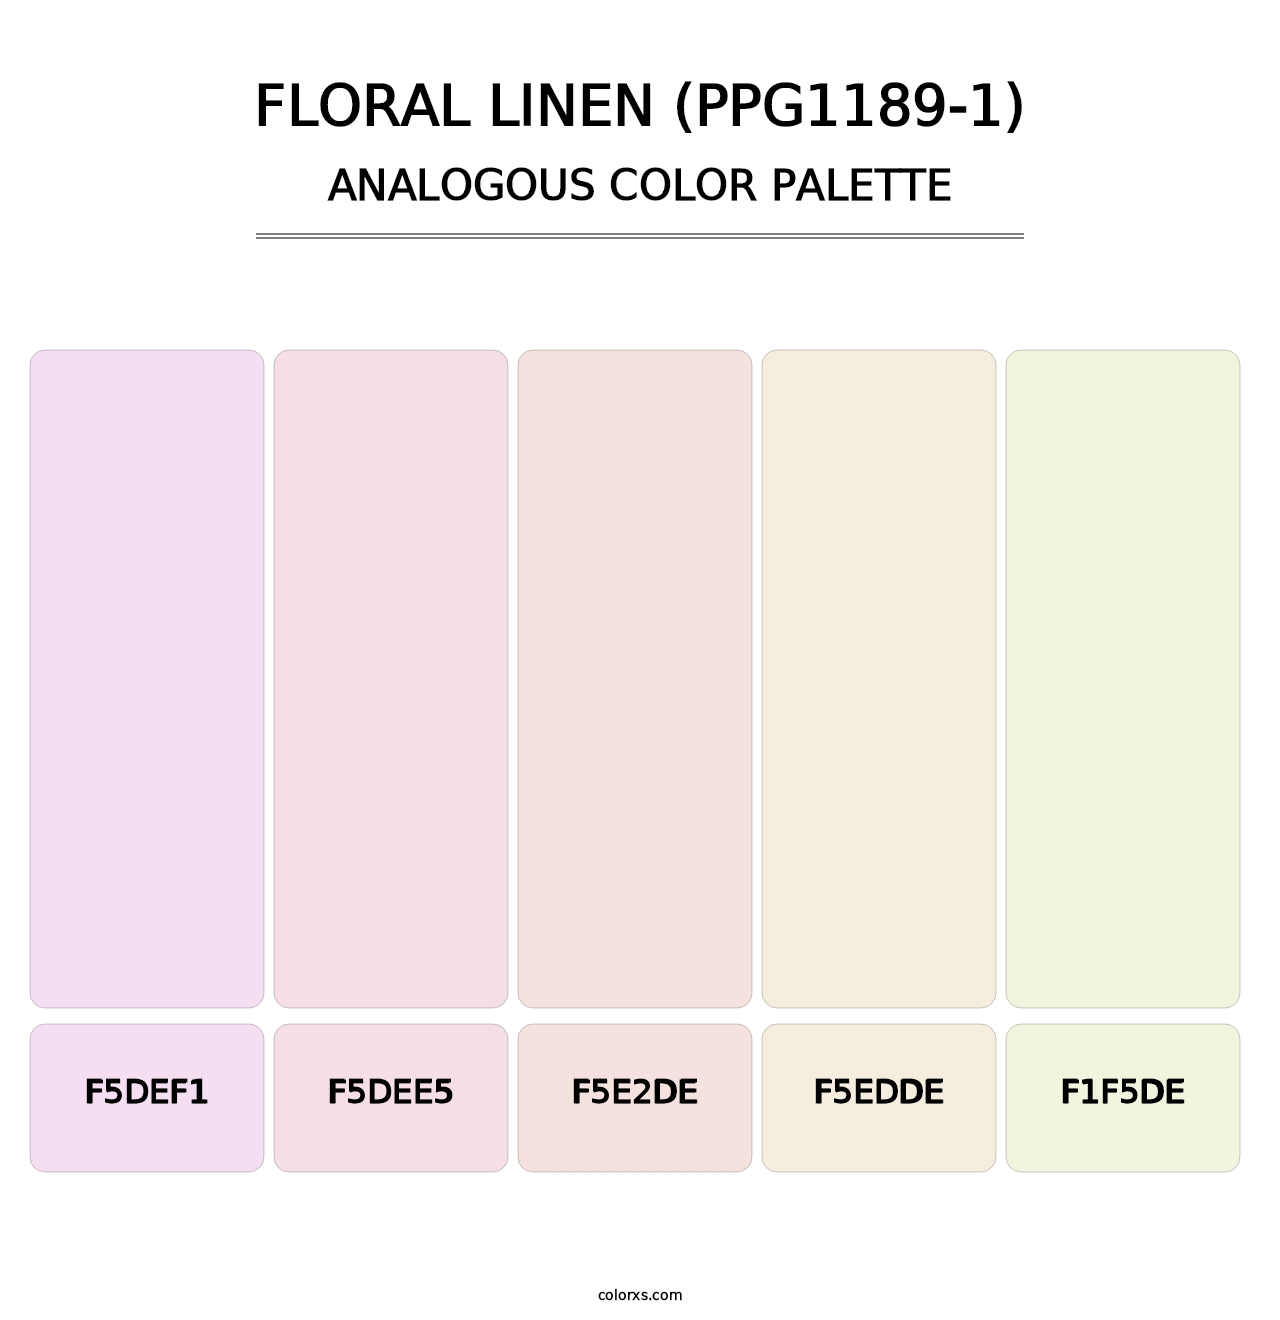 Floral Linen (PPG1189-1) - Analogous Color Palette